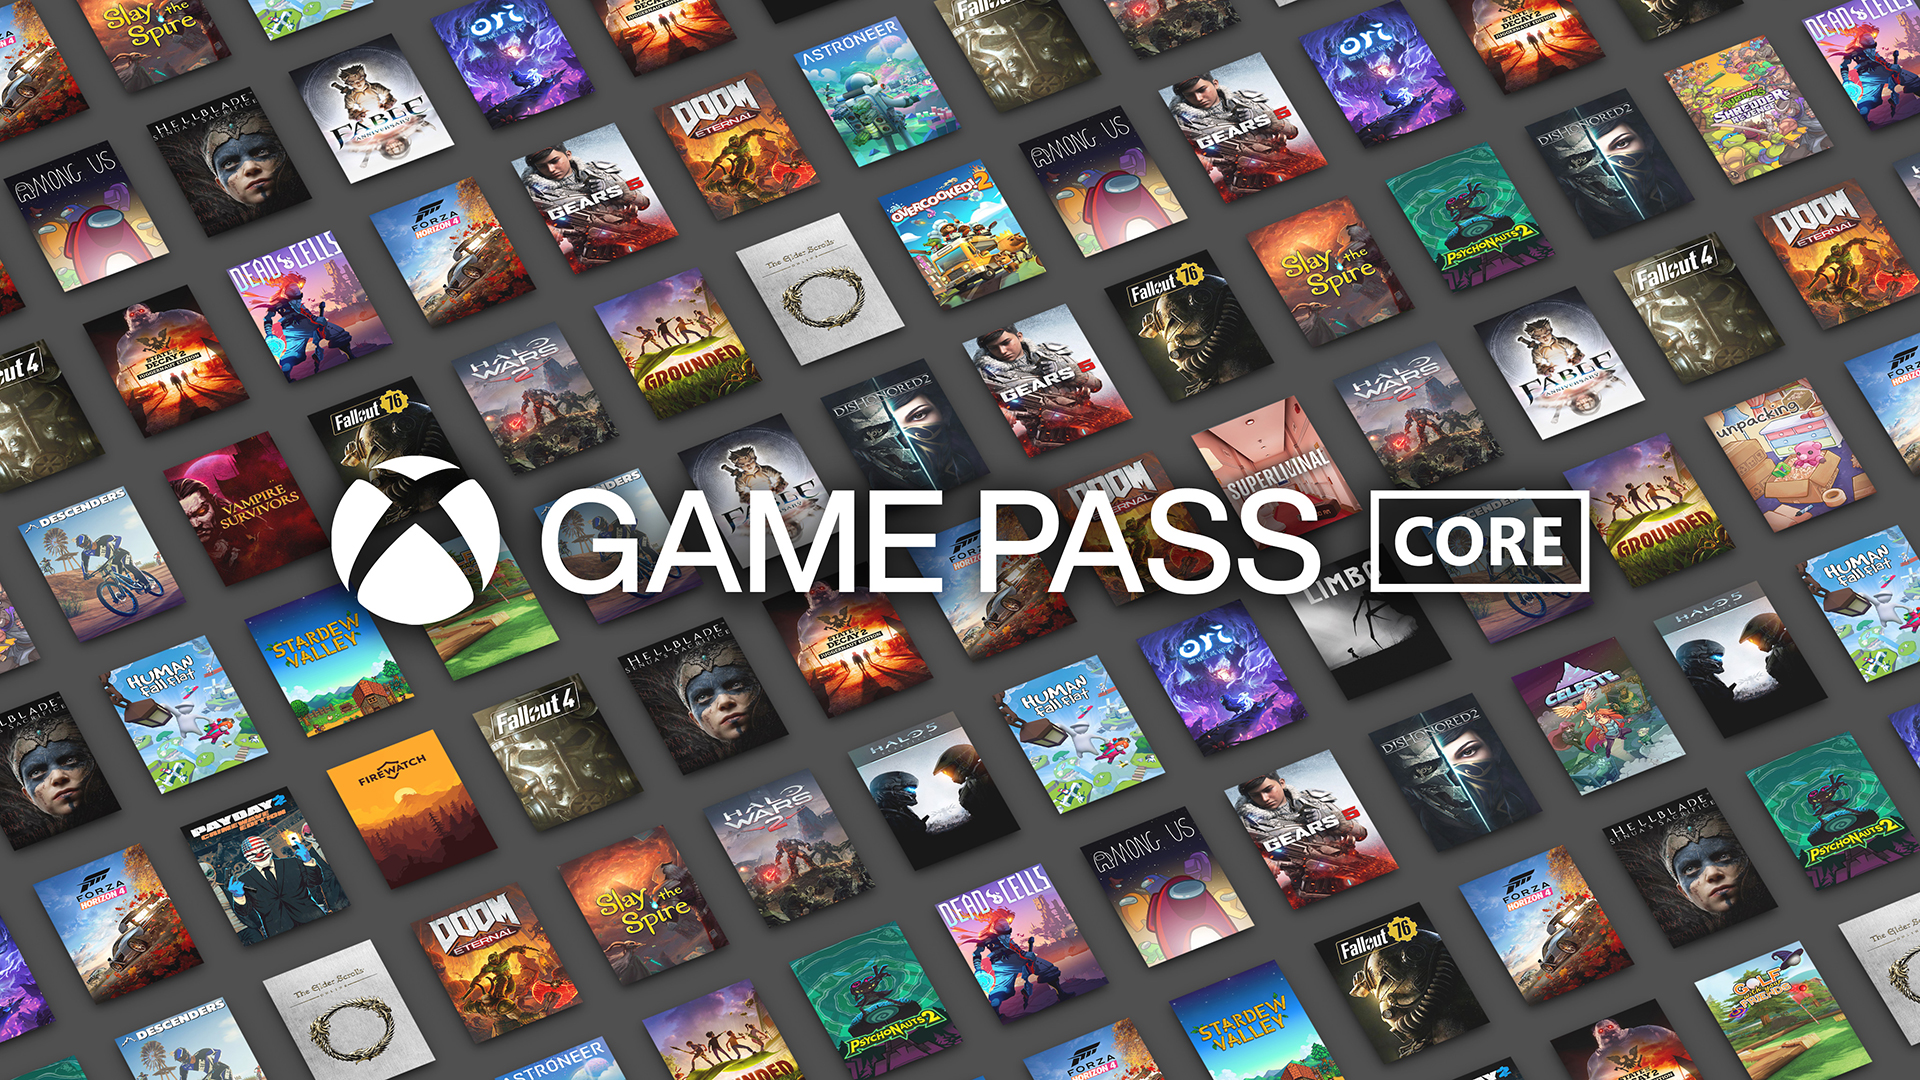 Game Pass Core首发有36款游戏 明日正式上线